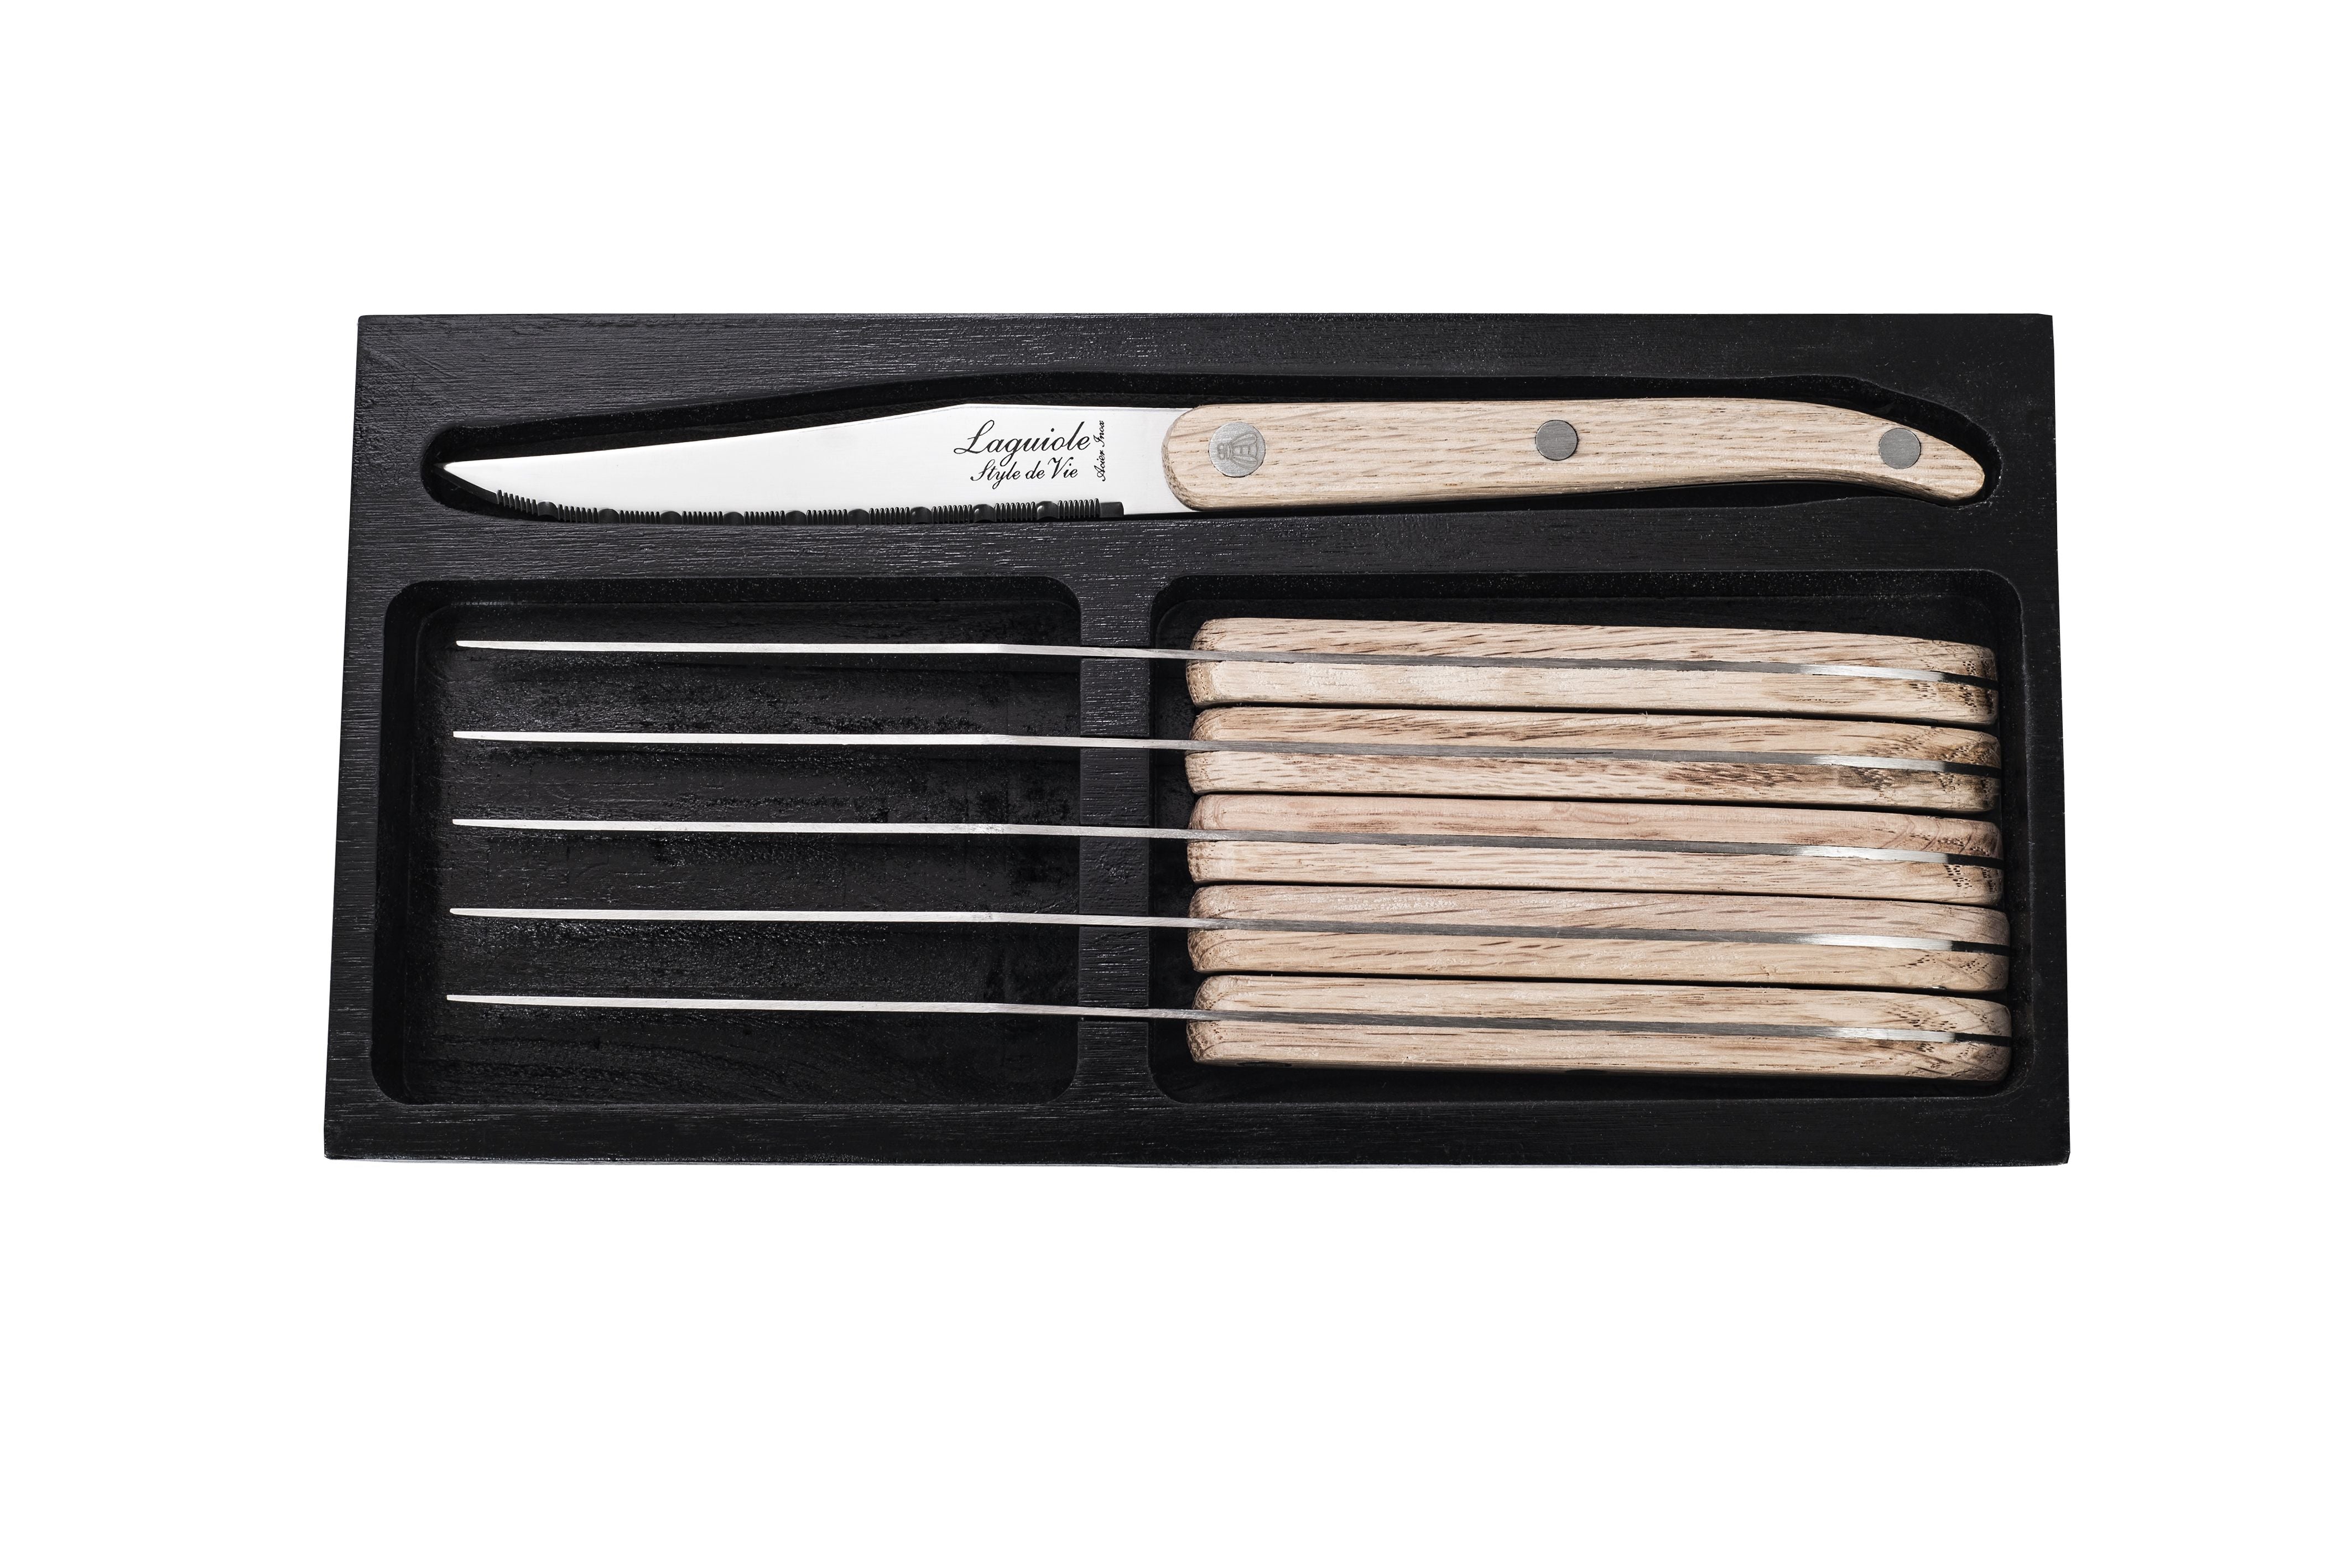 Style De Vie Authentique Laguiole Innovation Line Steak Knives 6 Piece Set Oak Wood, Sernotation Blade